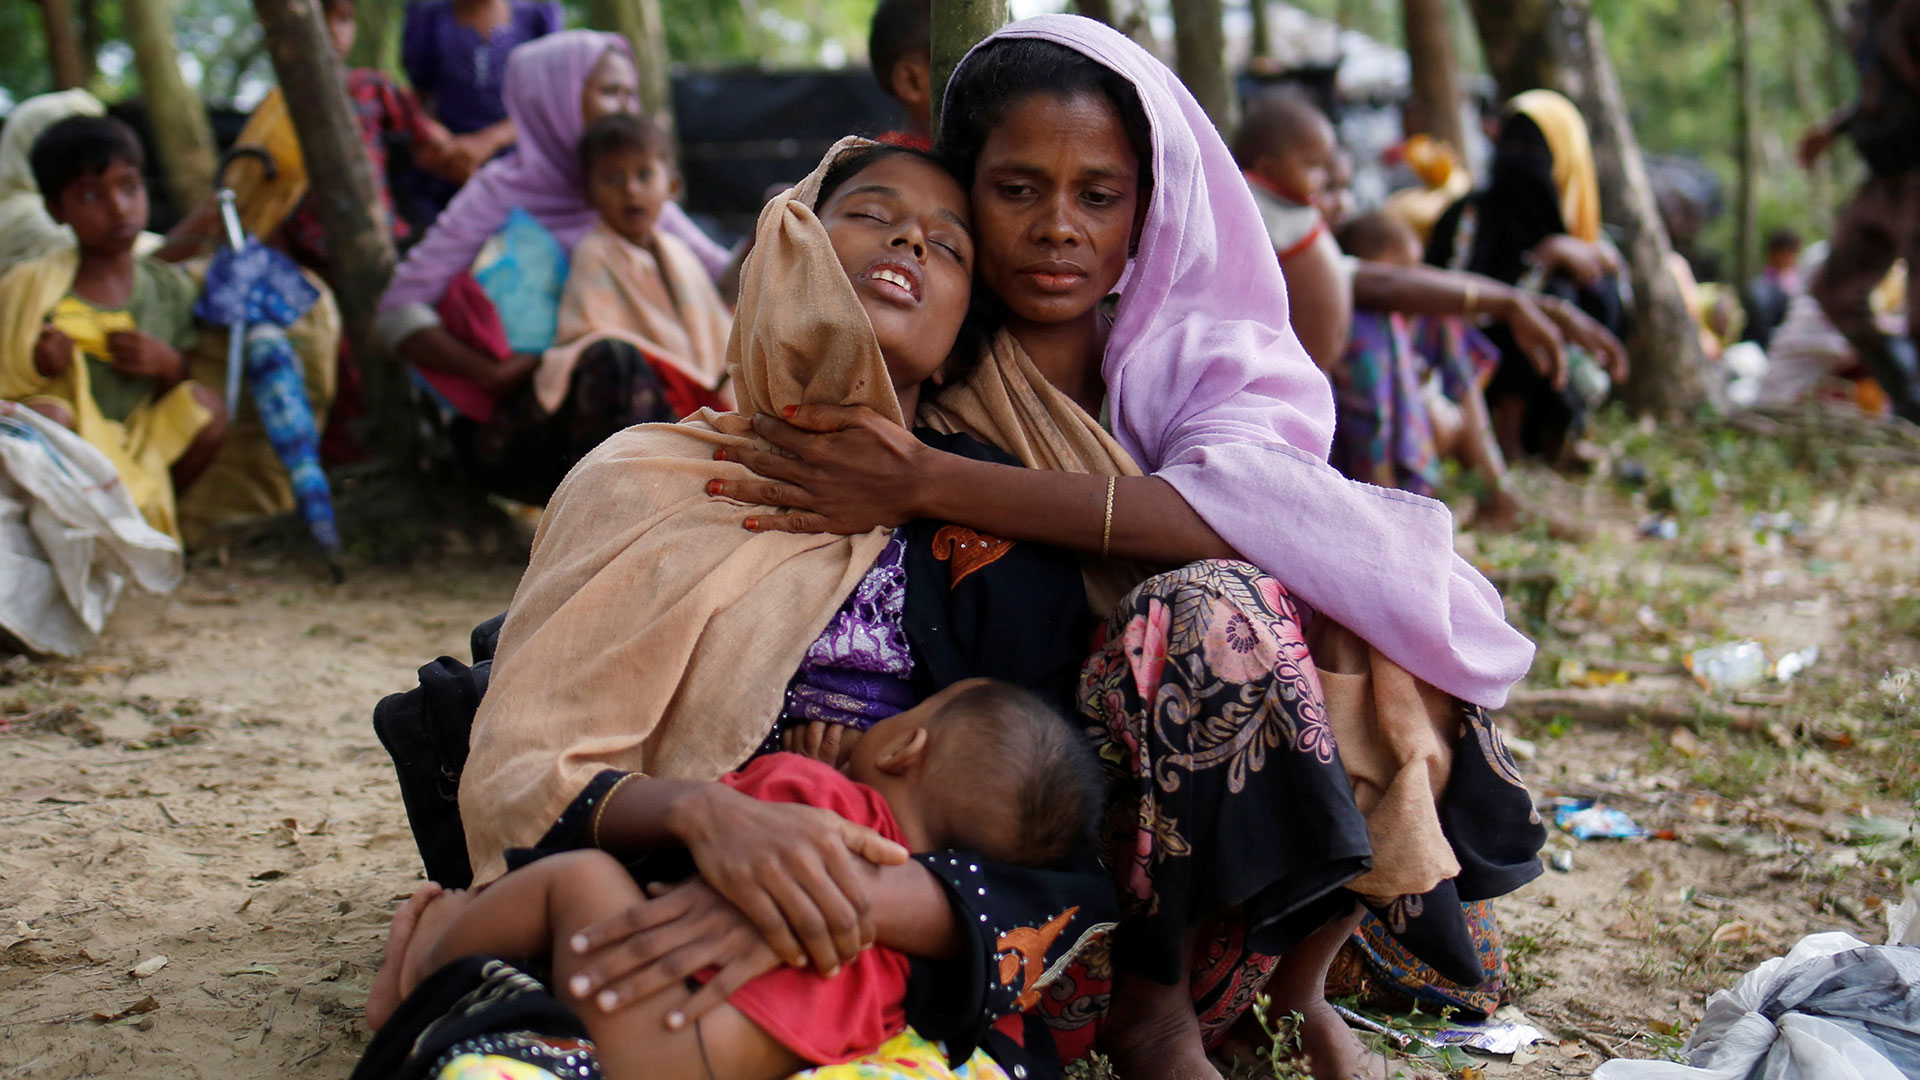 Grupos de derechos humanos advierten de que Facebook está intensificando la crisis de los rohingya